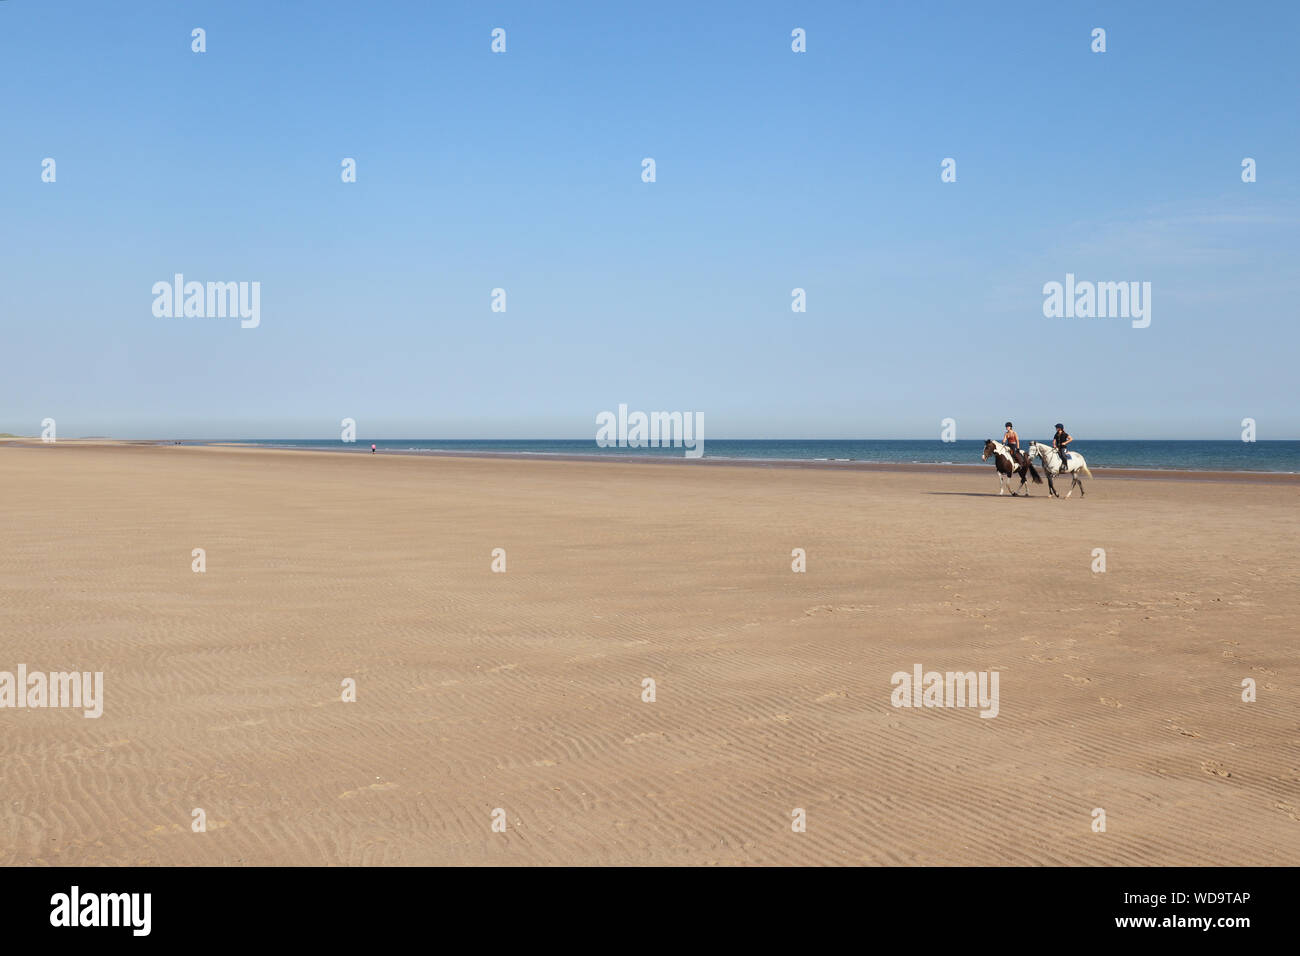 Una giornata di sole sulla spiaggia di Holkham, con il litorale e la spiaggia in vista. L'azzurro del cielo Foto Stock